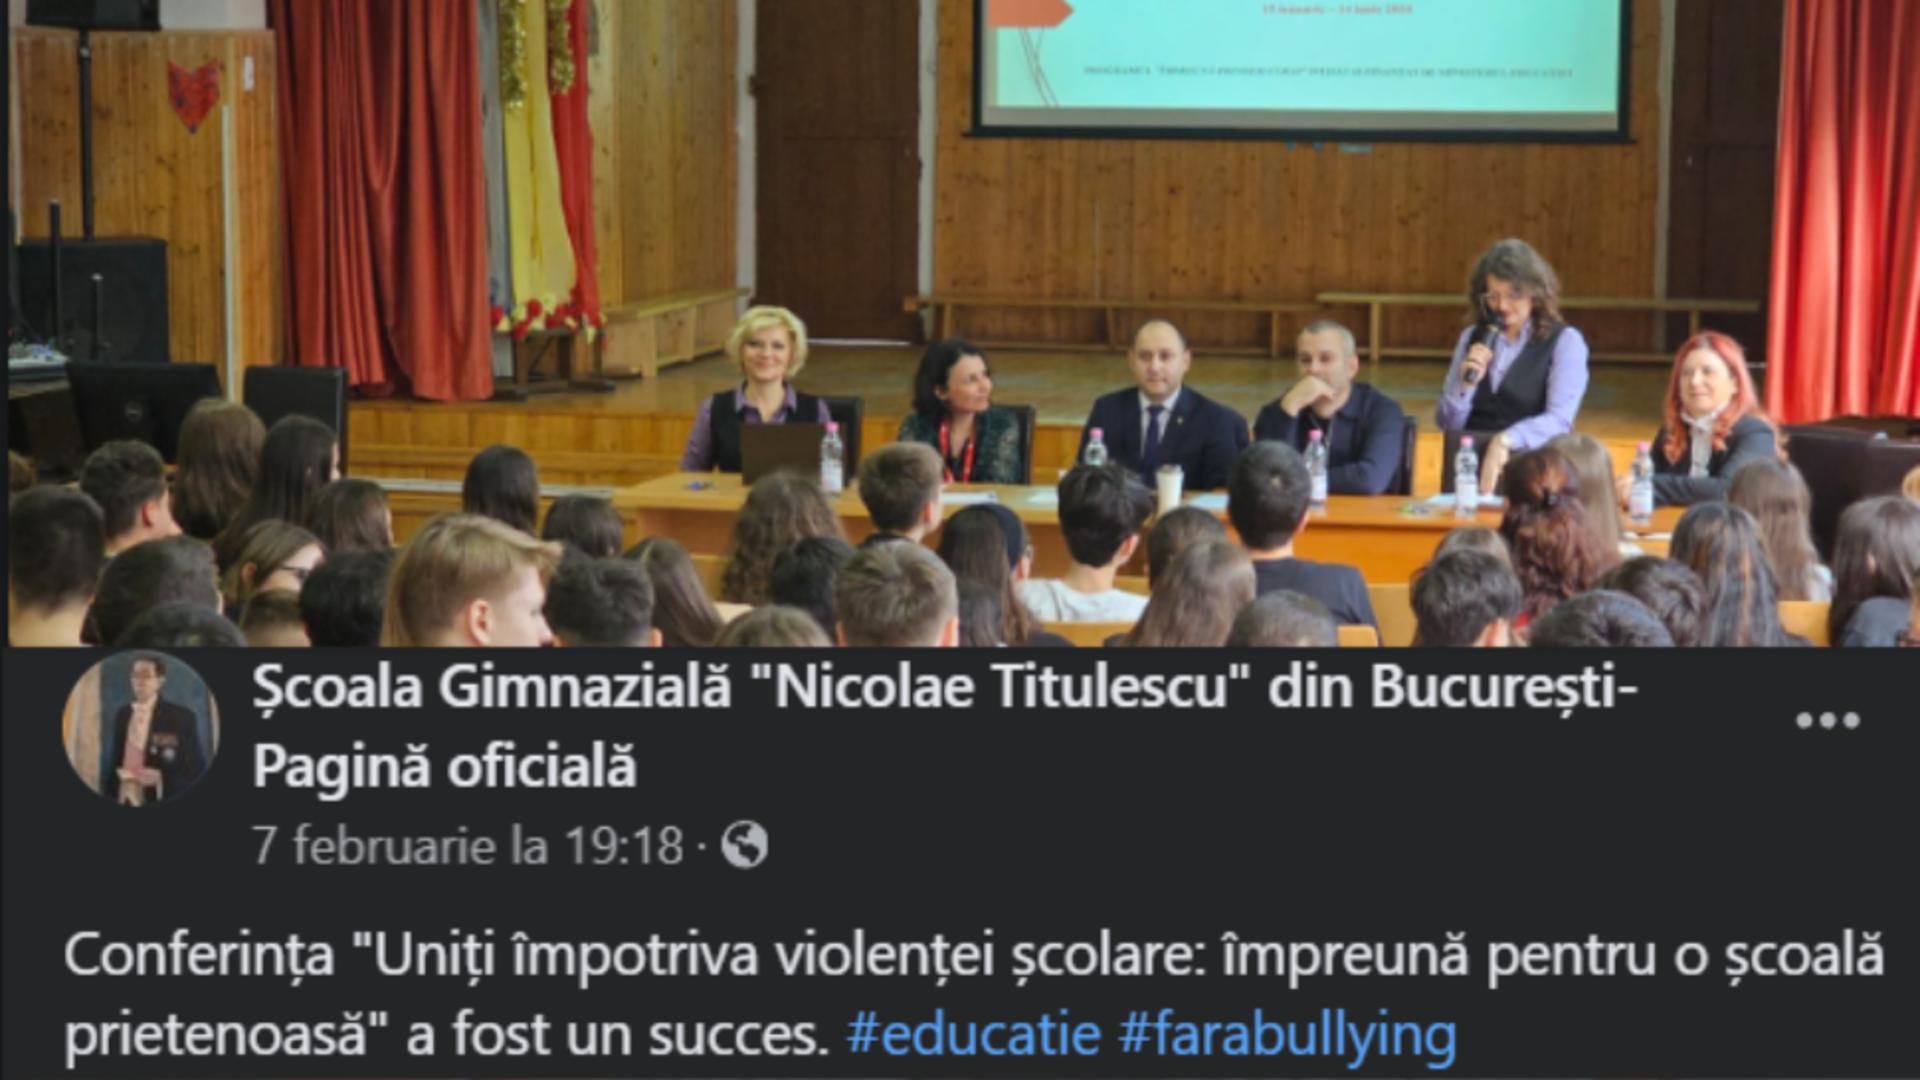 Ipocrizie fără margini la școala “Titulescu”. Înaintea scandalului legat de abuzuri, conducerea se lăuda că o conferința împotriva violenței școlare a fost un SUCCES